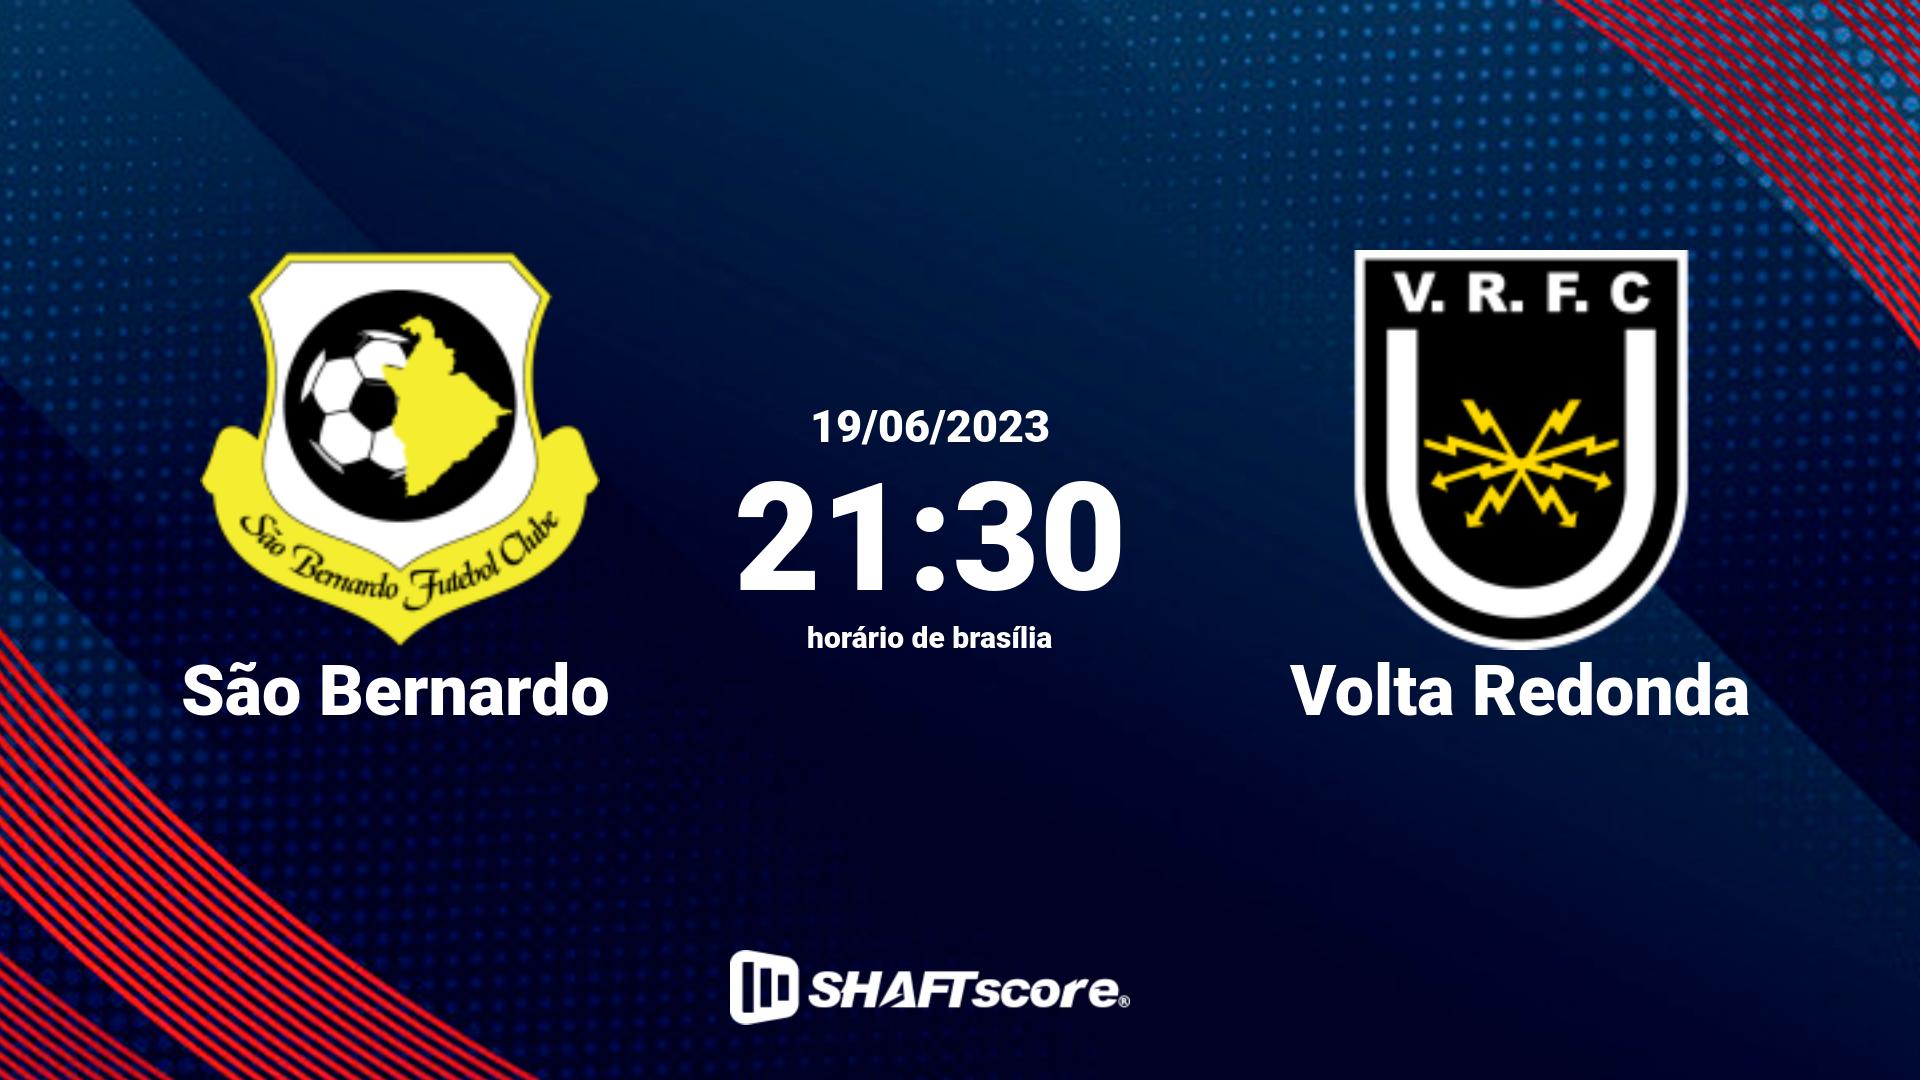 Estatísticas do jogo São Bernardo vs Volta Redonda 19.06 21:30